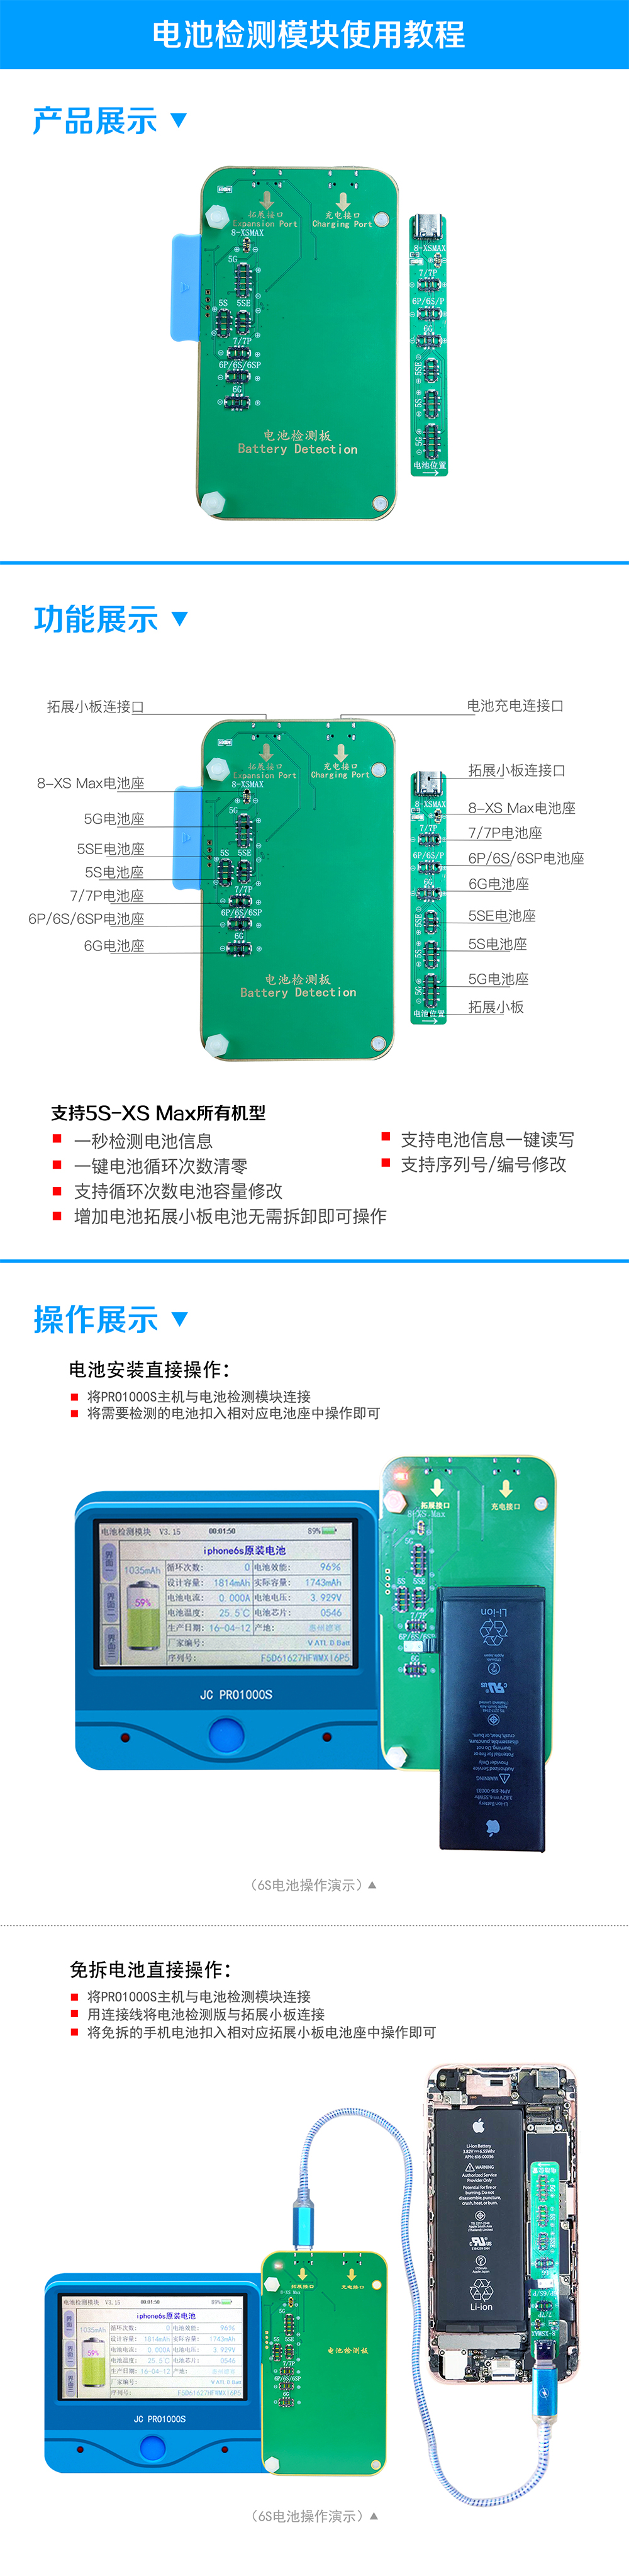 电池检测模块中文版.jpg